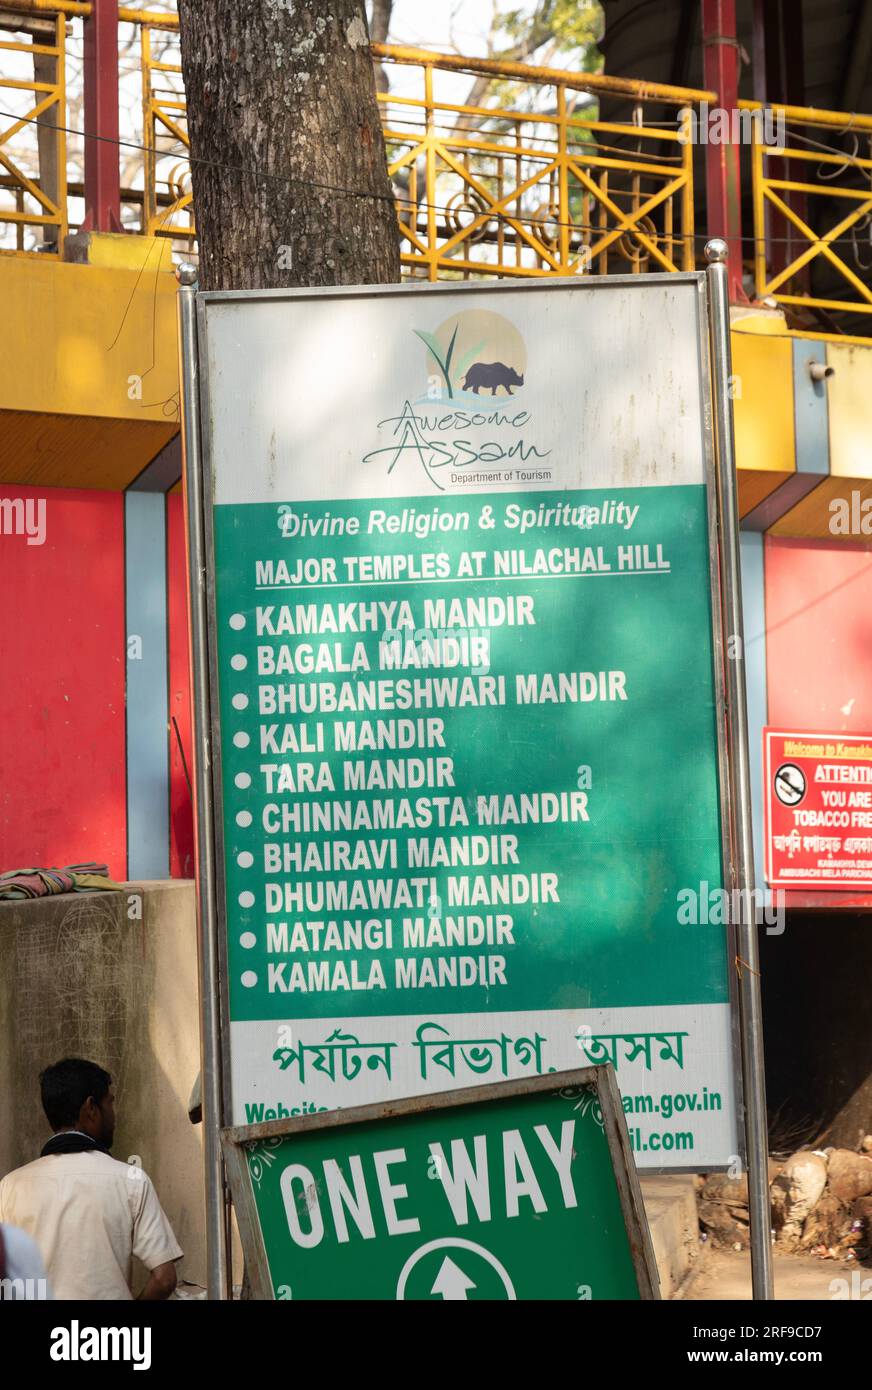 Panneau indiquant les dix grands mandirs (temples hindous) sur la colline de Nilachal à la périphérie de Guwahati, Assam, Inde. Banque D'Images